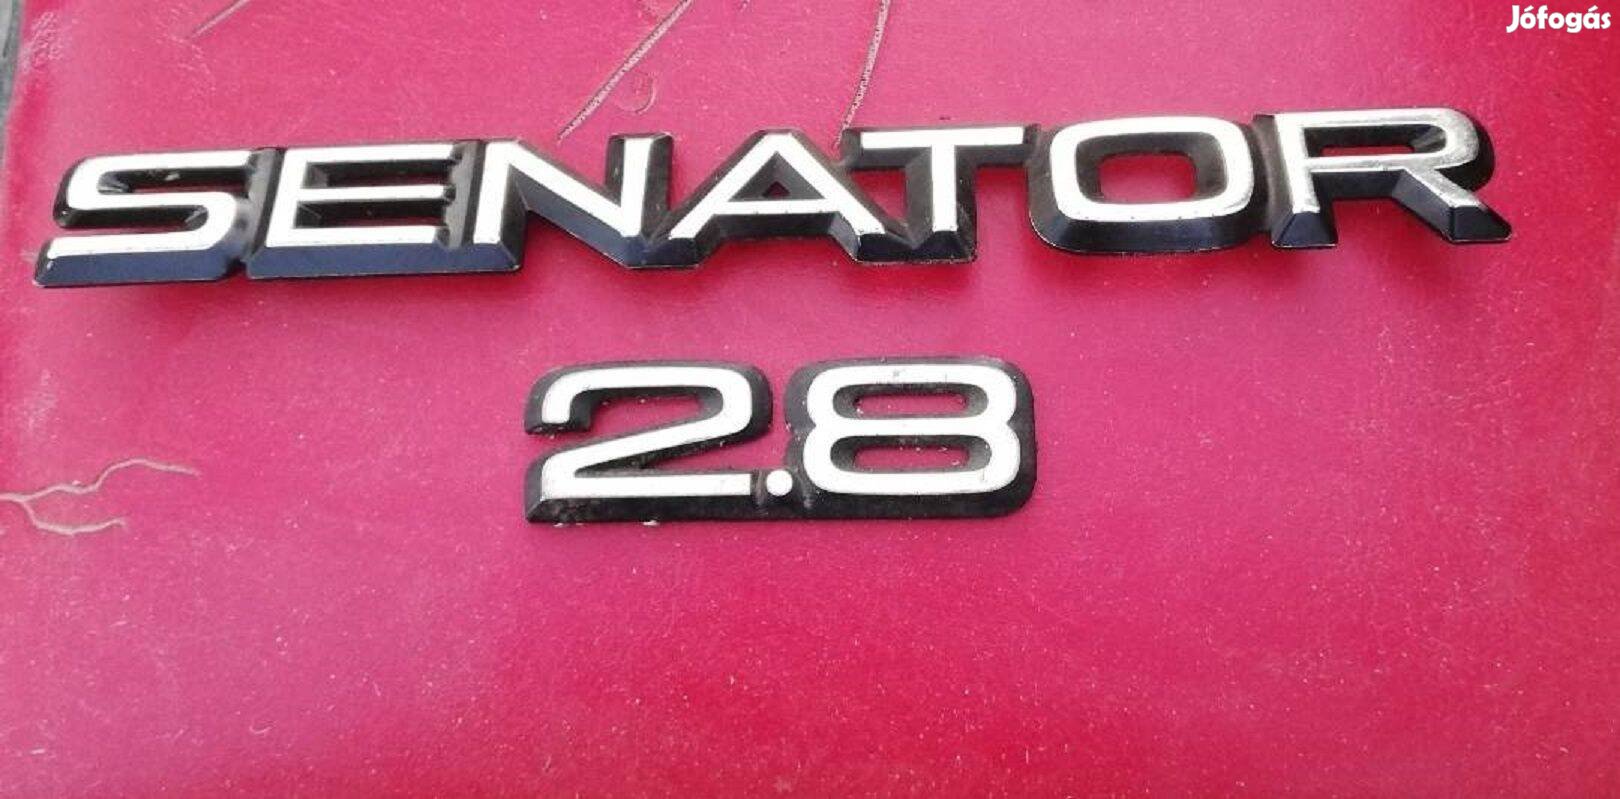 Opel Senator A 2.8 felirat,embléma